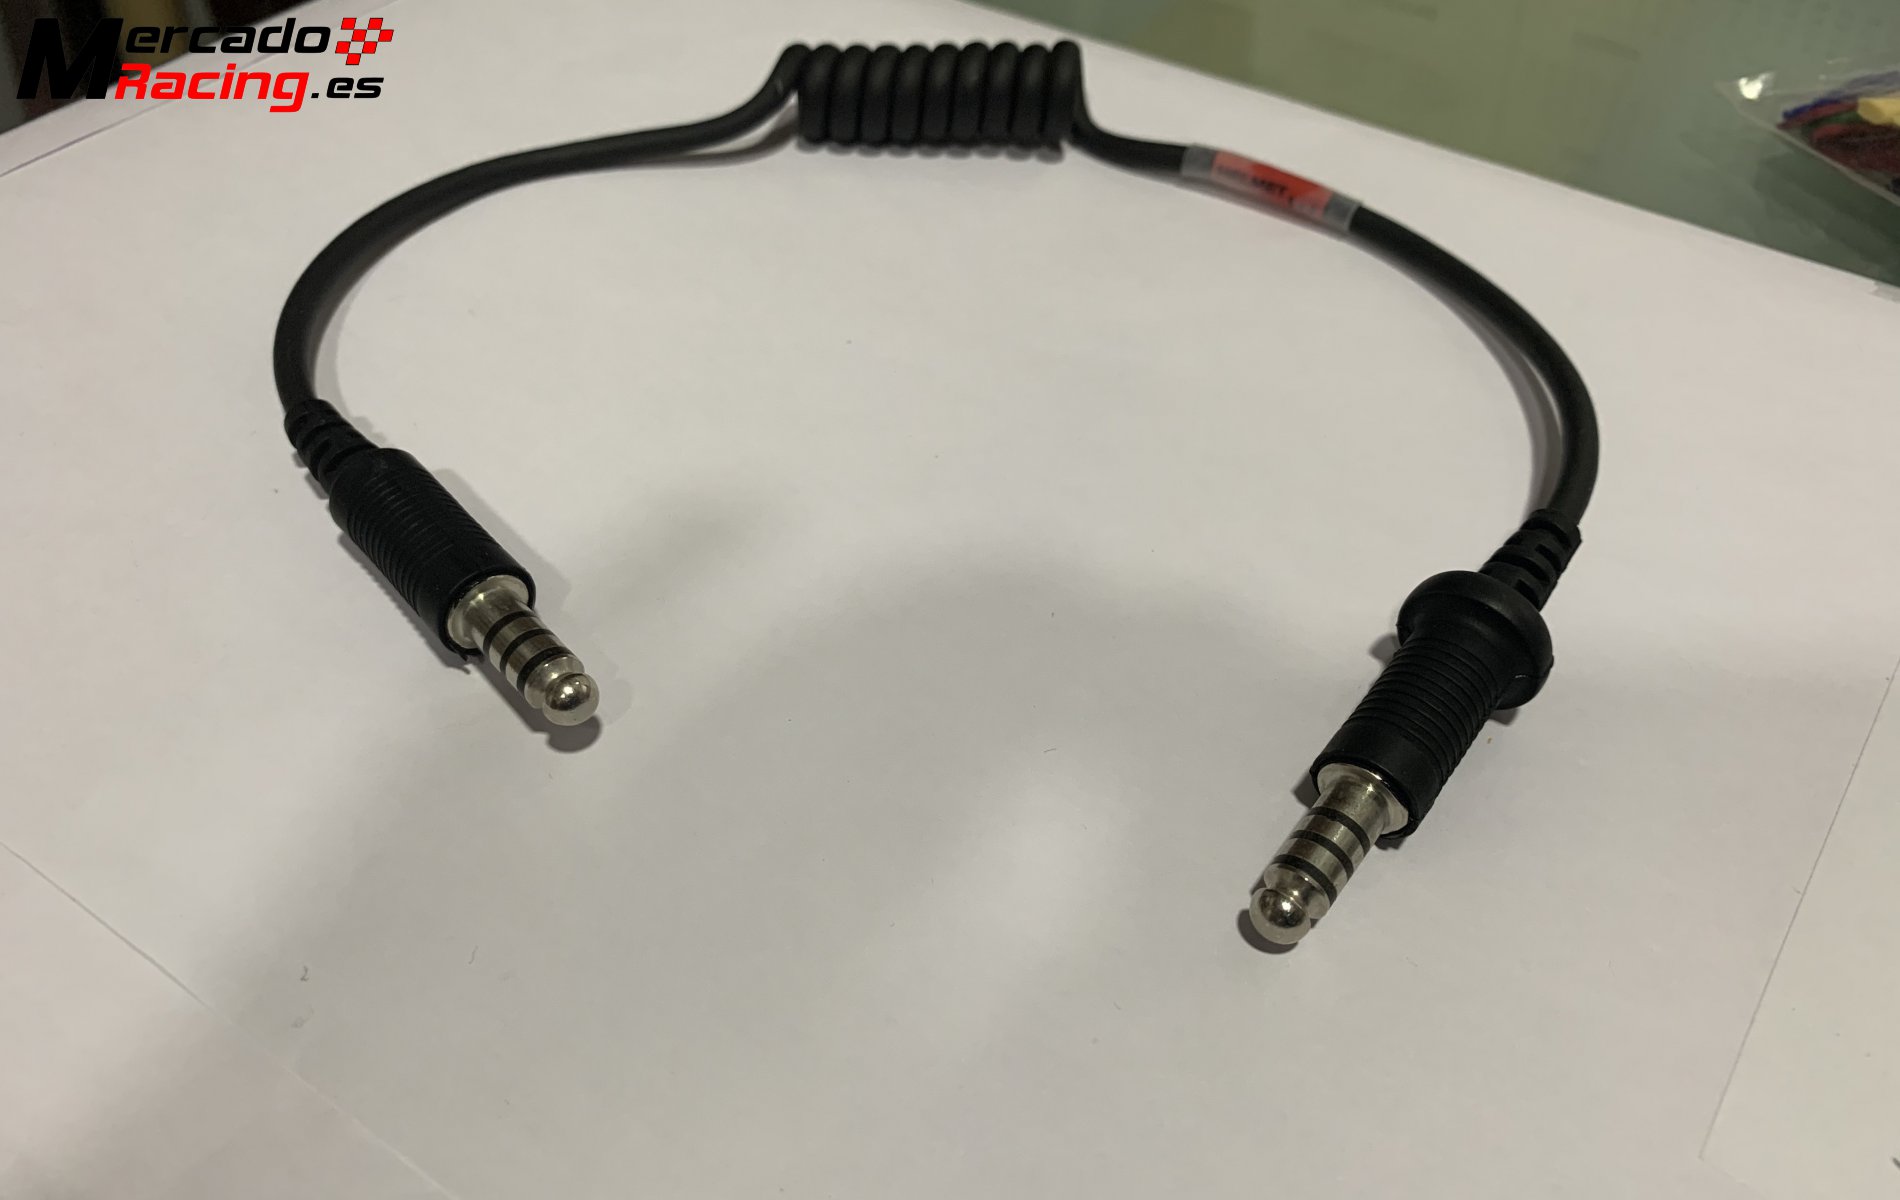 Cable adaptador casco stilo wrc a centralita peltor, solo utilizado en